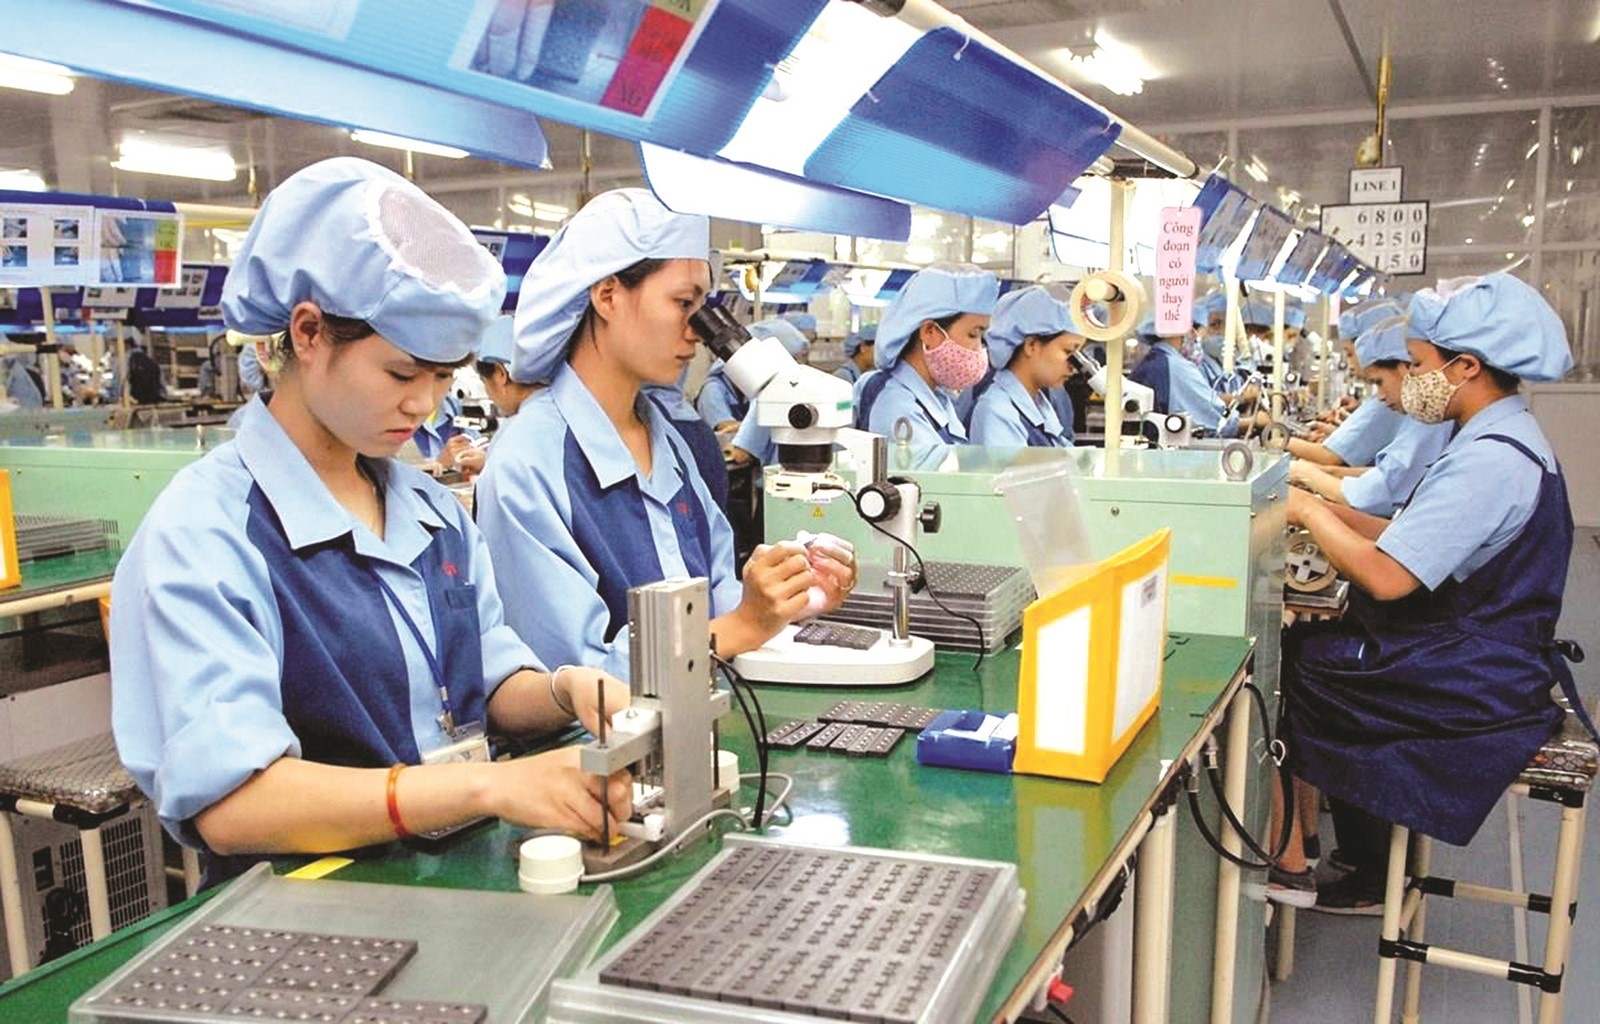 Các DN công nghiệp hỗ trợ Việt cần rất nỗ lực để tăng năng lực cạnh tranh và tham gia sâu vào chuỗi sản xuất toàn cầu.